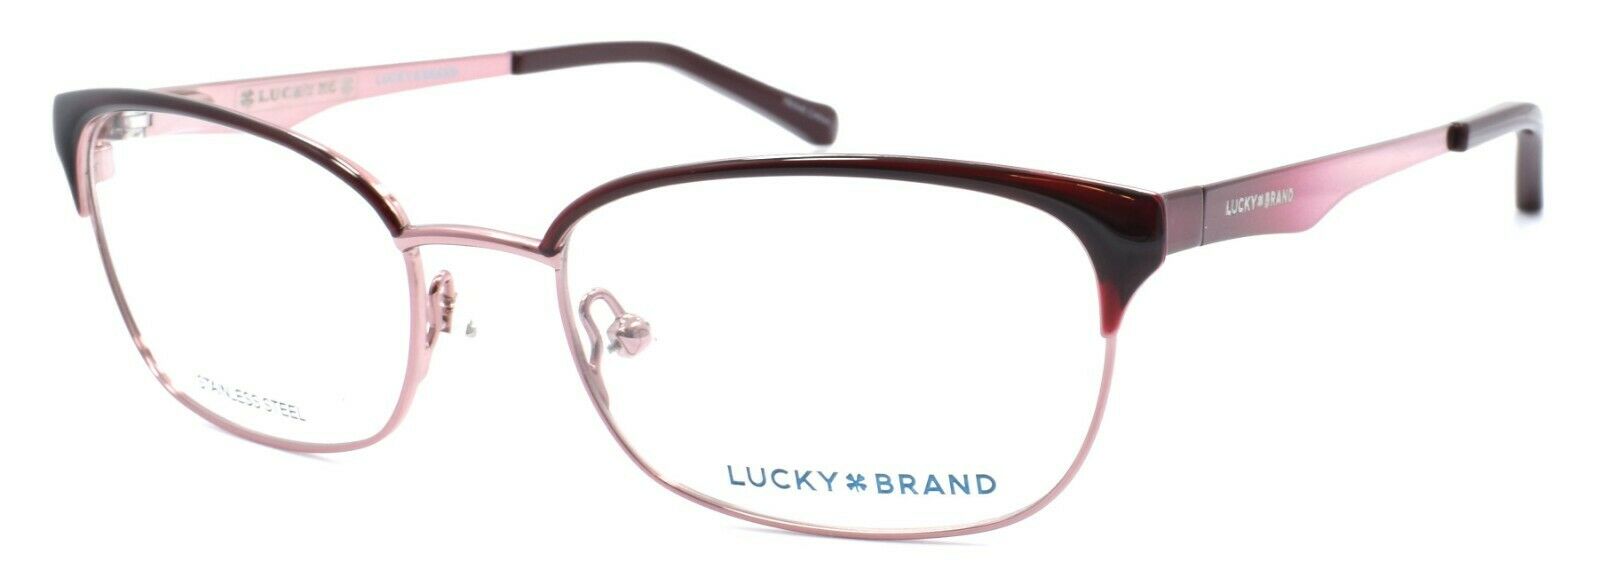 1-LUCKY BRAND D703 Eyeglasses Frames SMALL 49-16-130 Pink + CASE-751286282191-IKSpecs